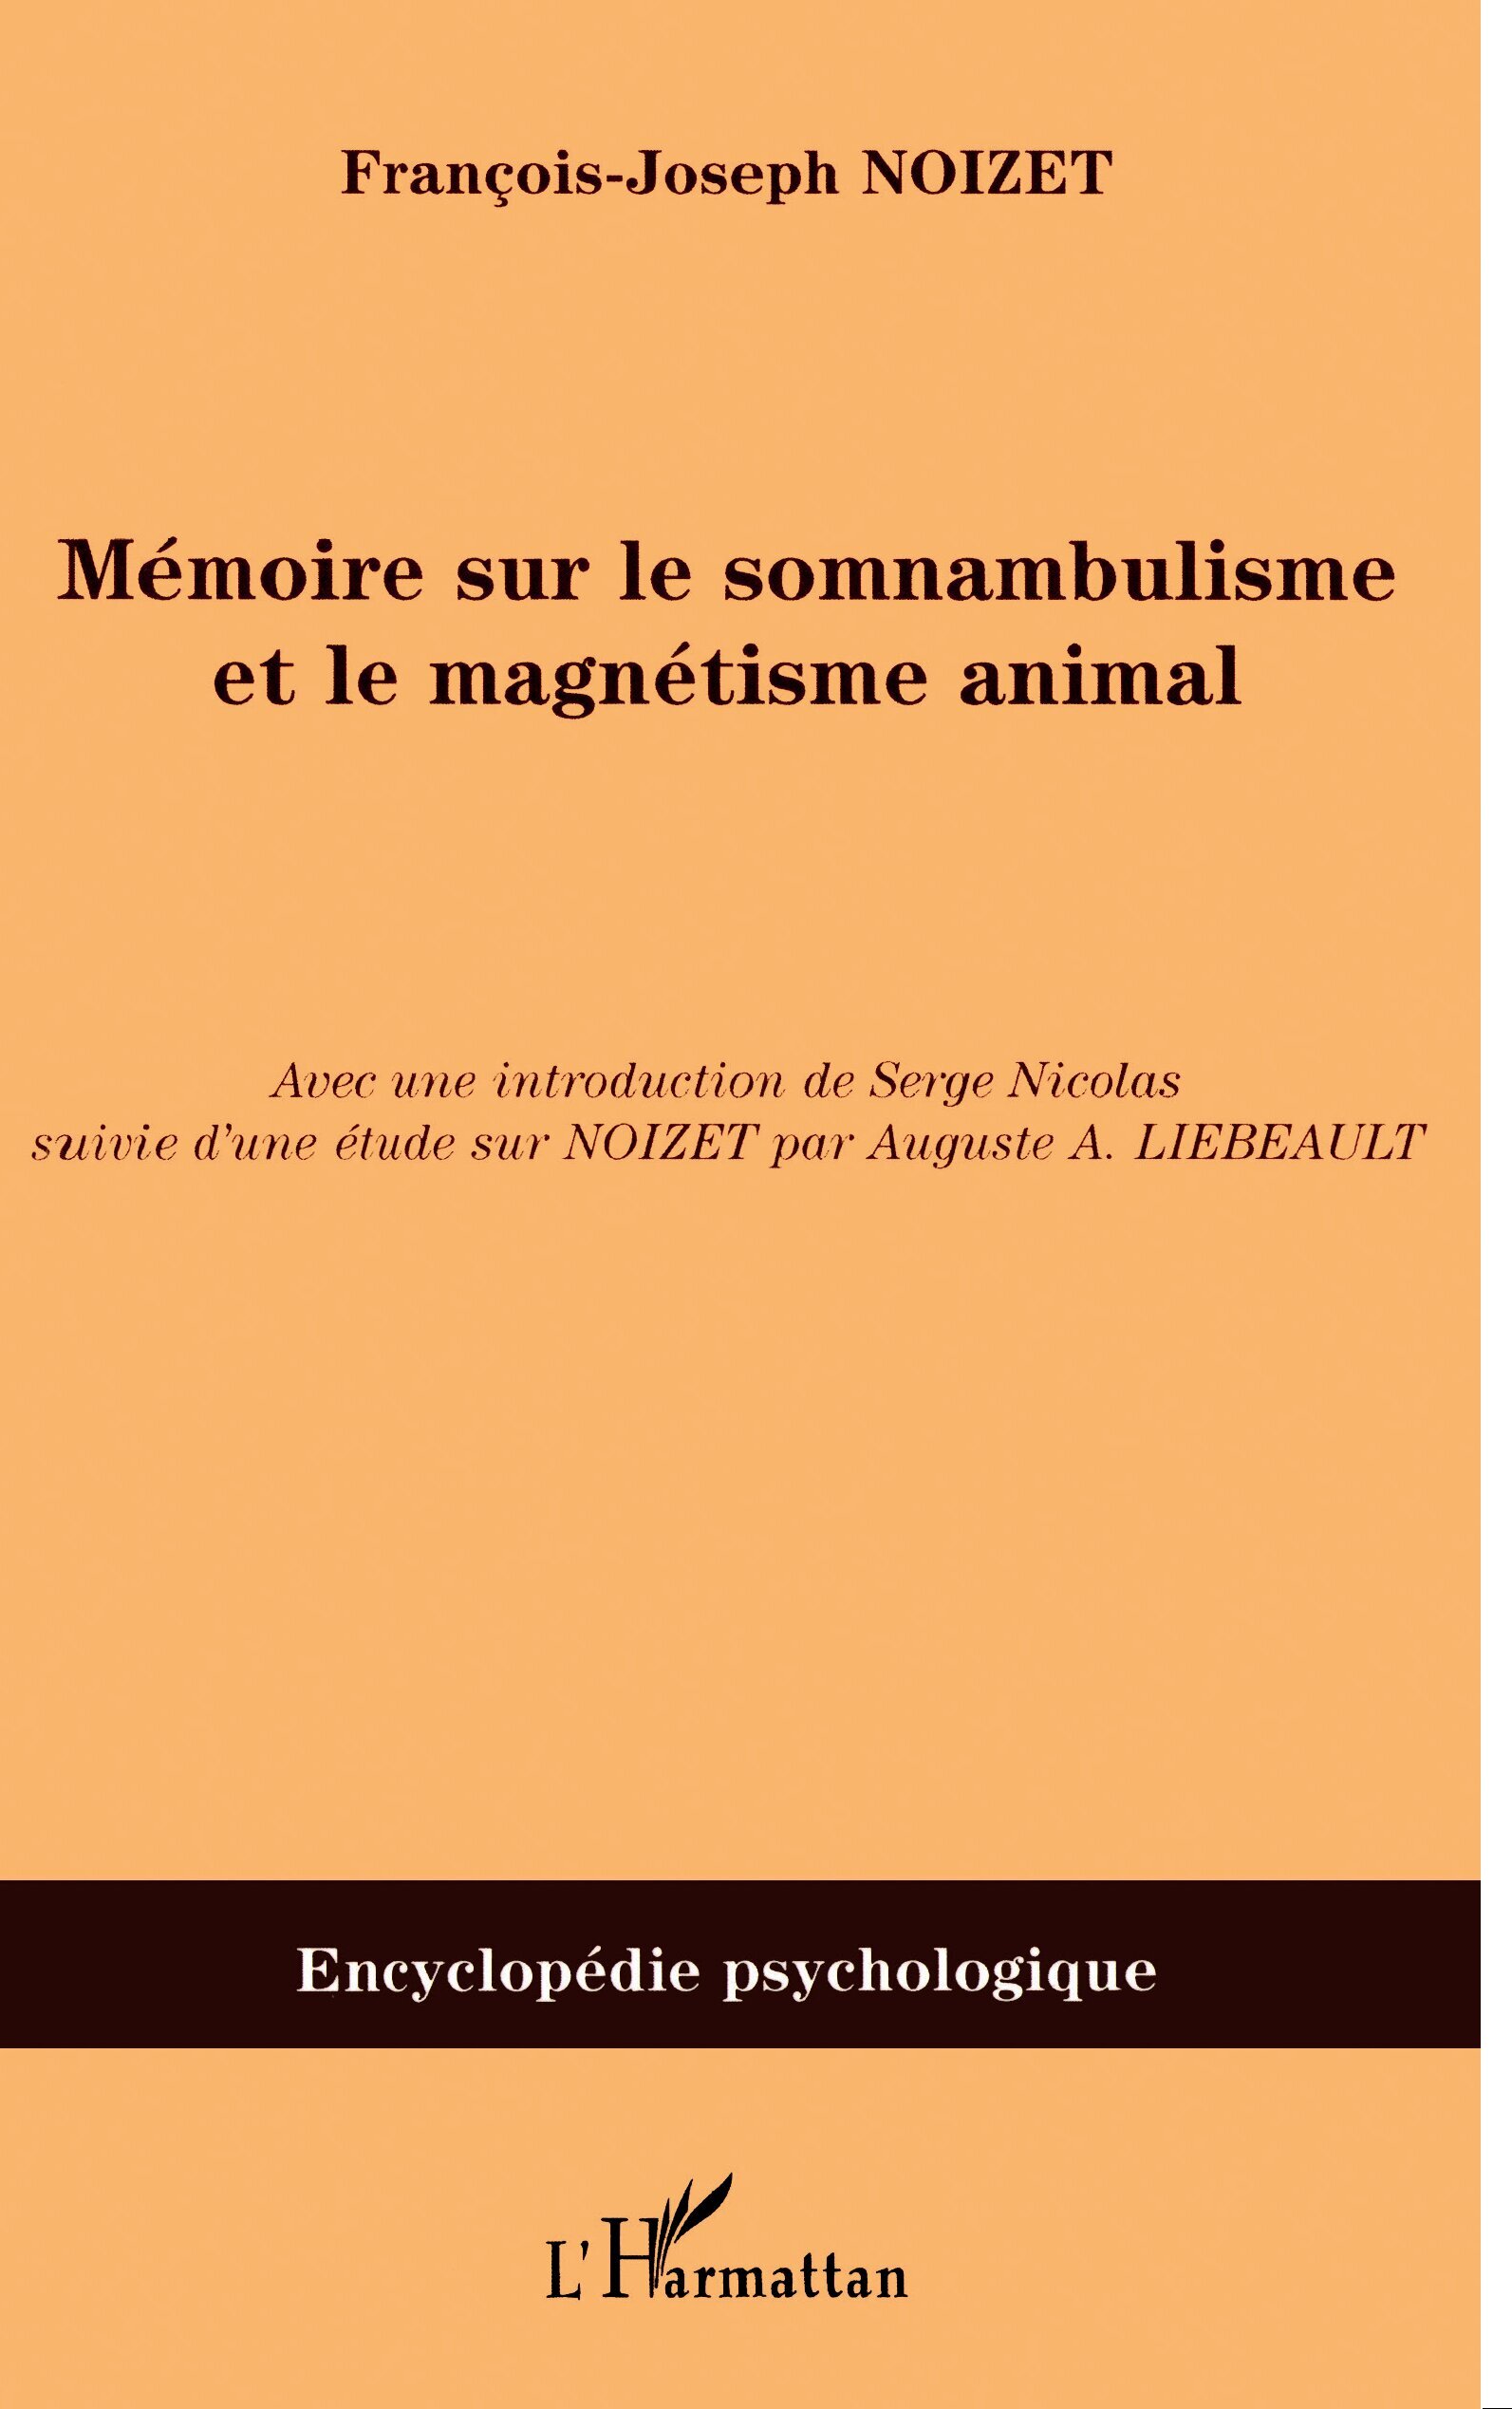 Mémoire sur le somnambulisme et le magnétisme animal (9782747582889-front-cover)